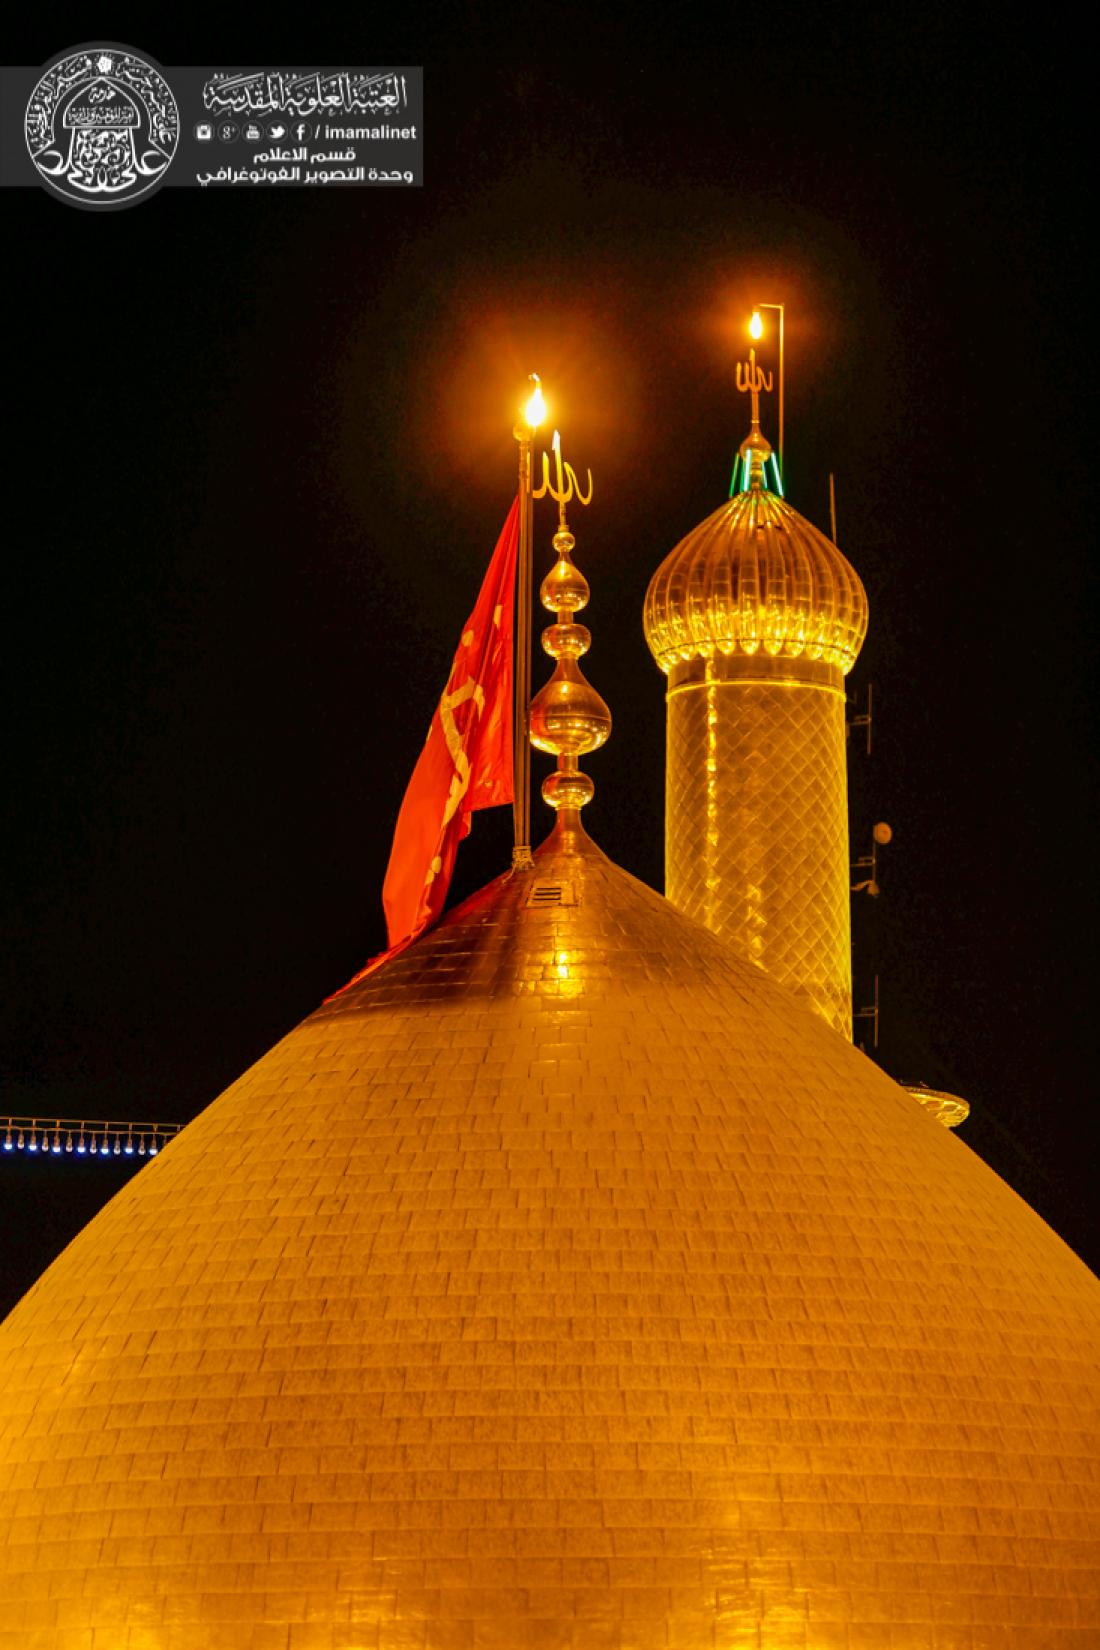 تقرير مصور : الاجواء الايمانية في ليلة الجمعة في العتبة الحسينية والعتبة العباسية في كربلاء المقدسة  | 